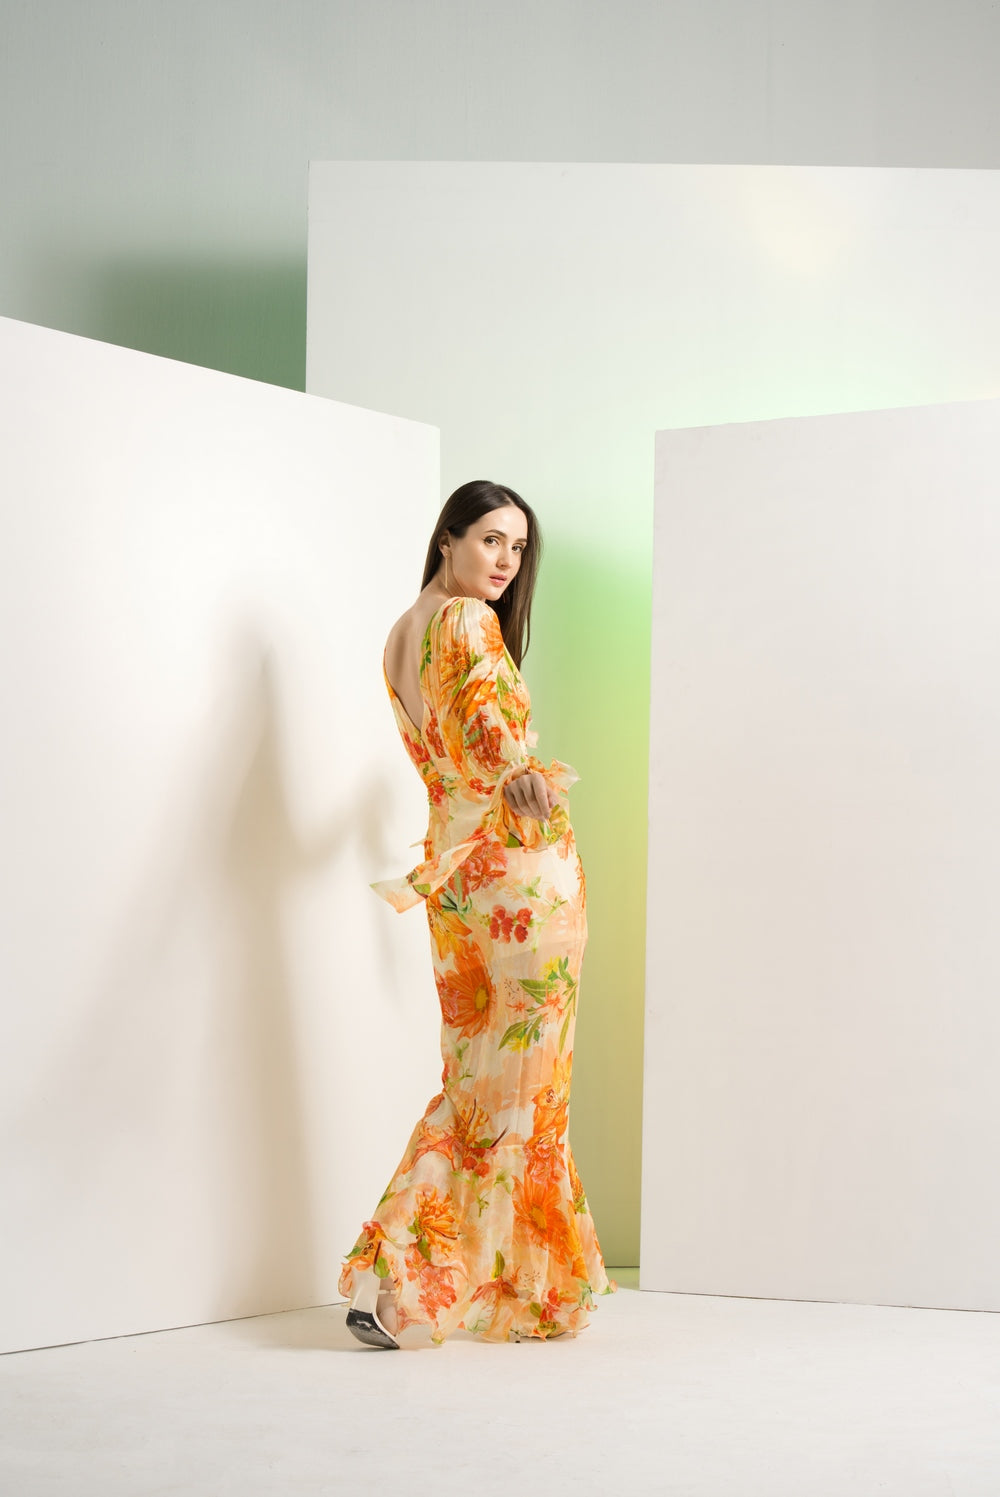 Orange lilium chffon dress with waist buckle details